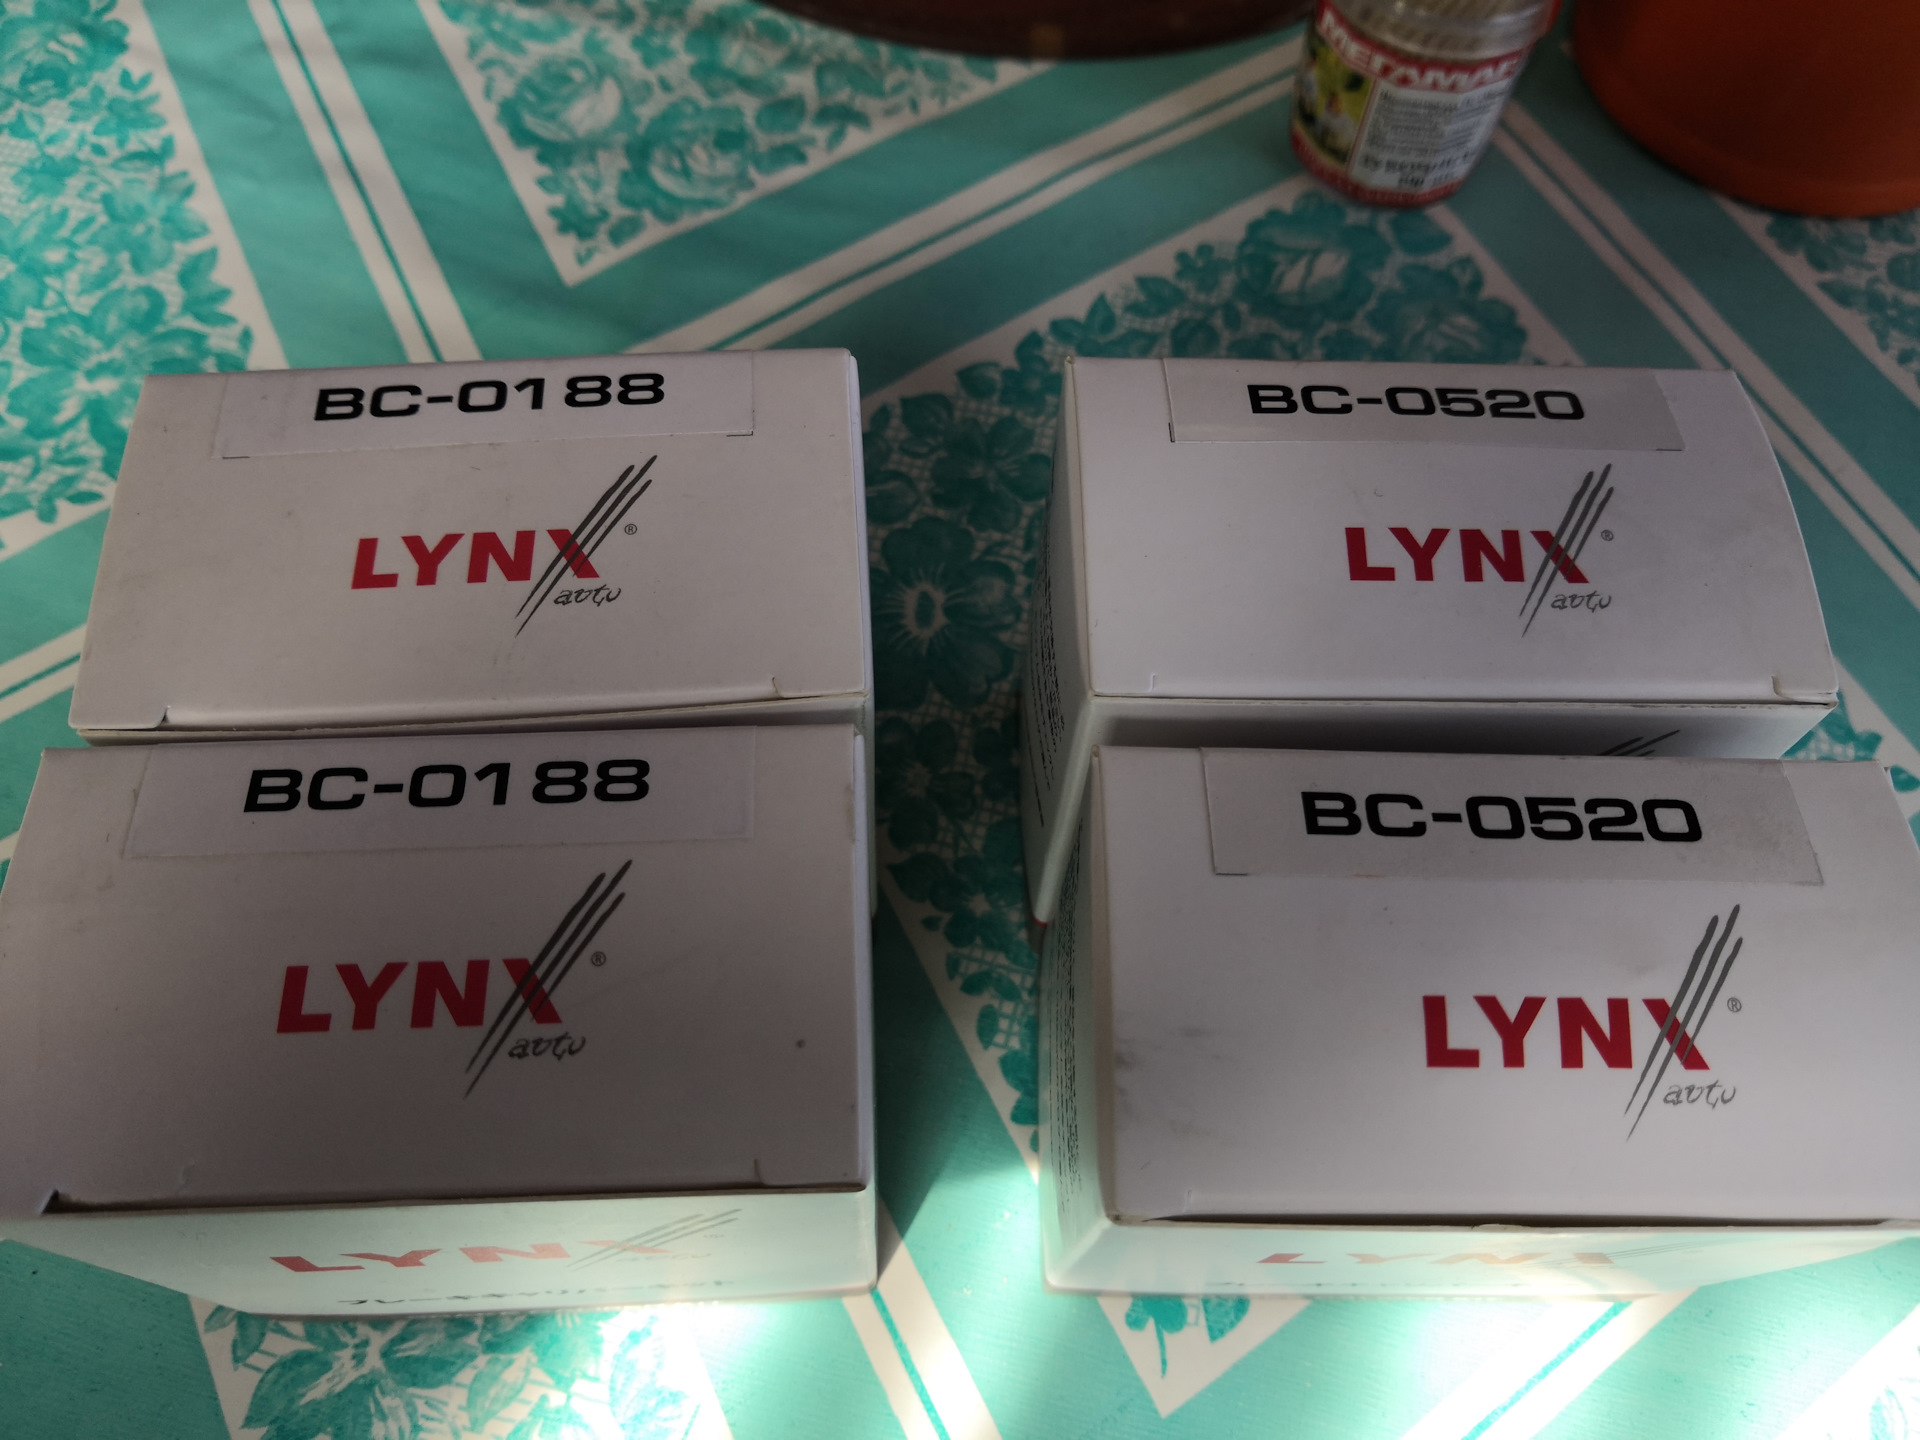 Линкс запчасти. Линкс запчасти Страна производитель. Lynx 520. Lynx ремкомплект отзывы.